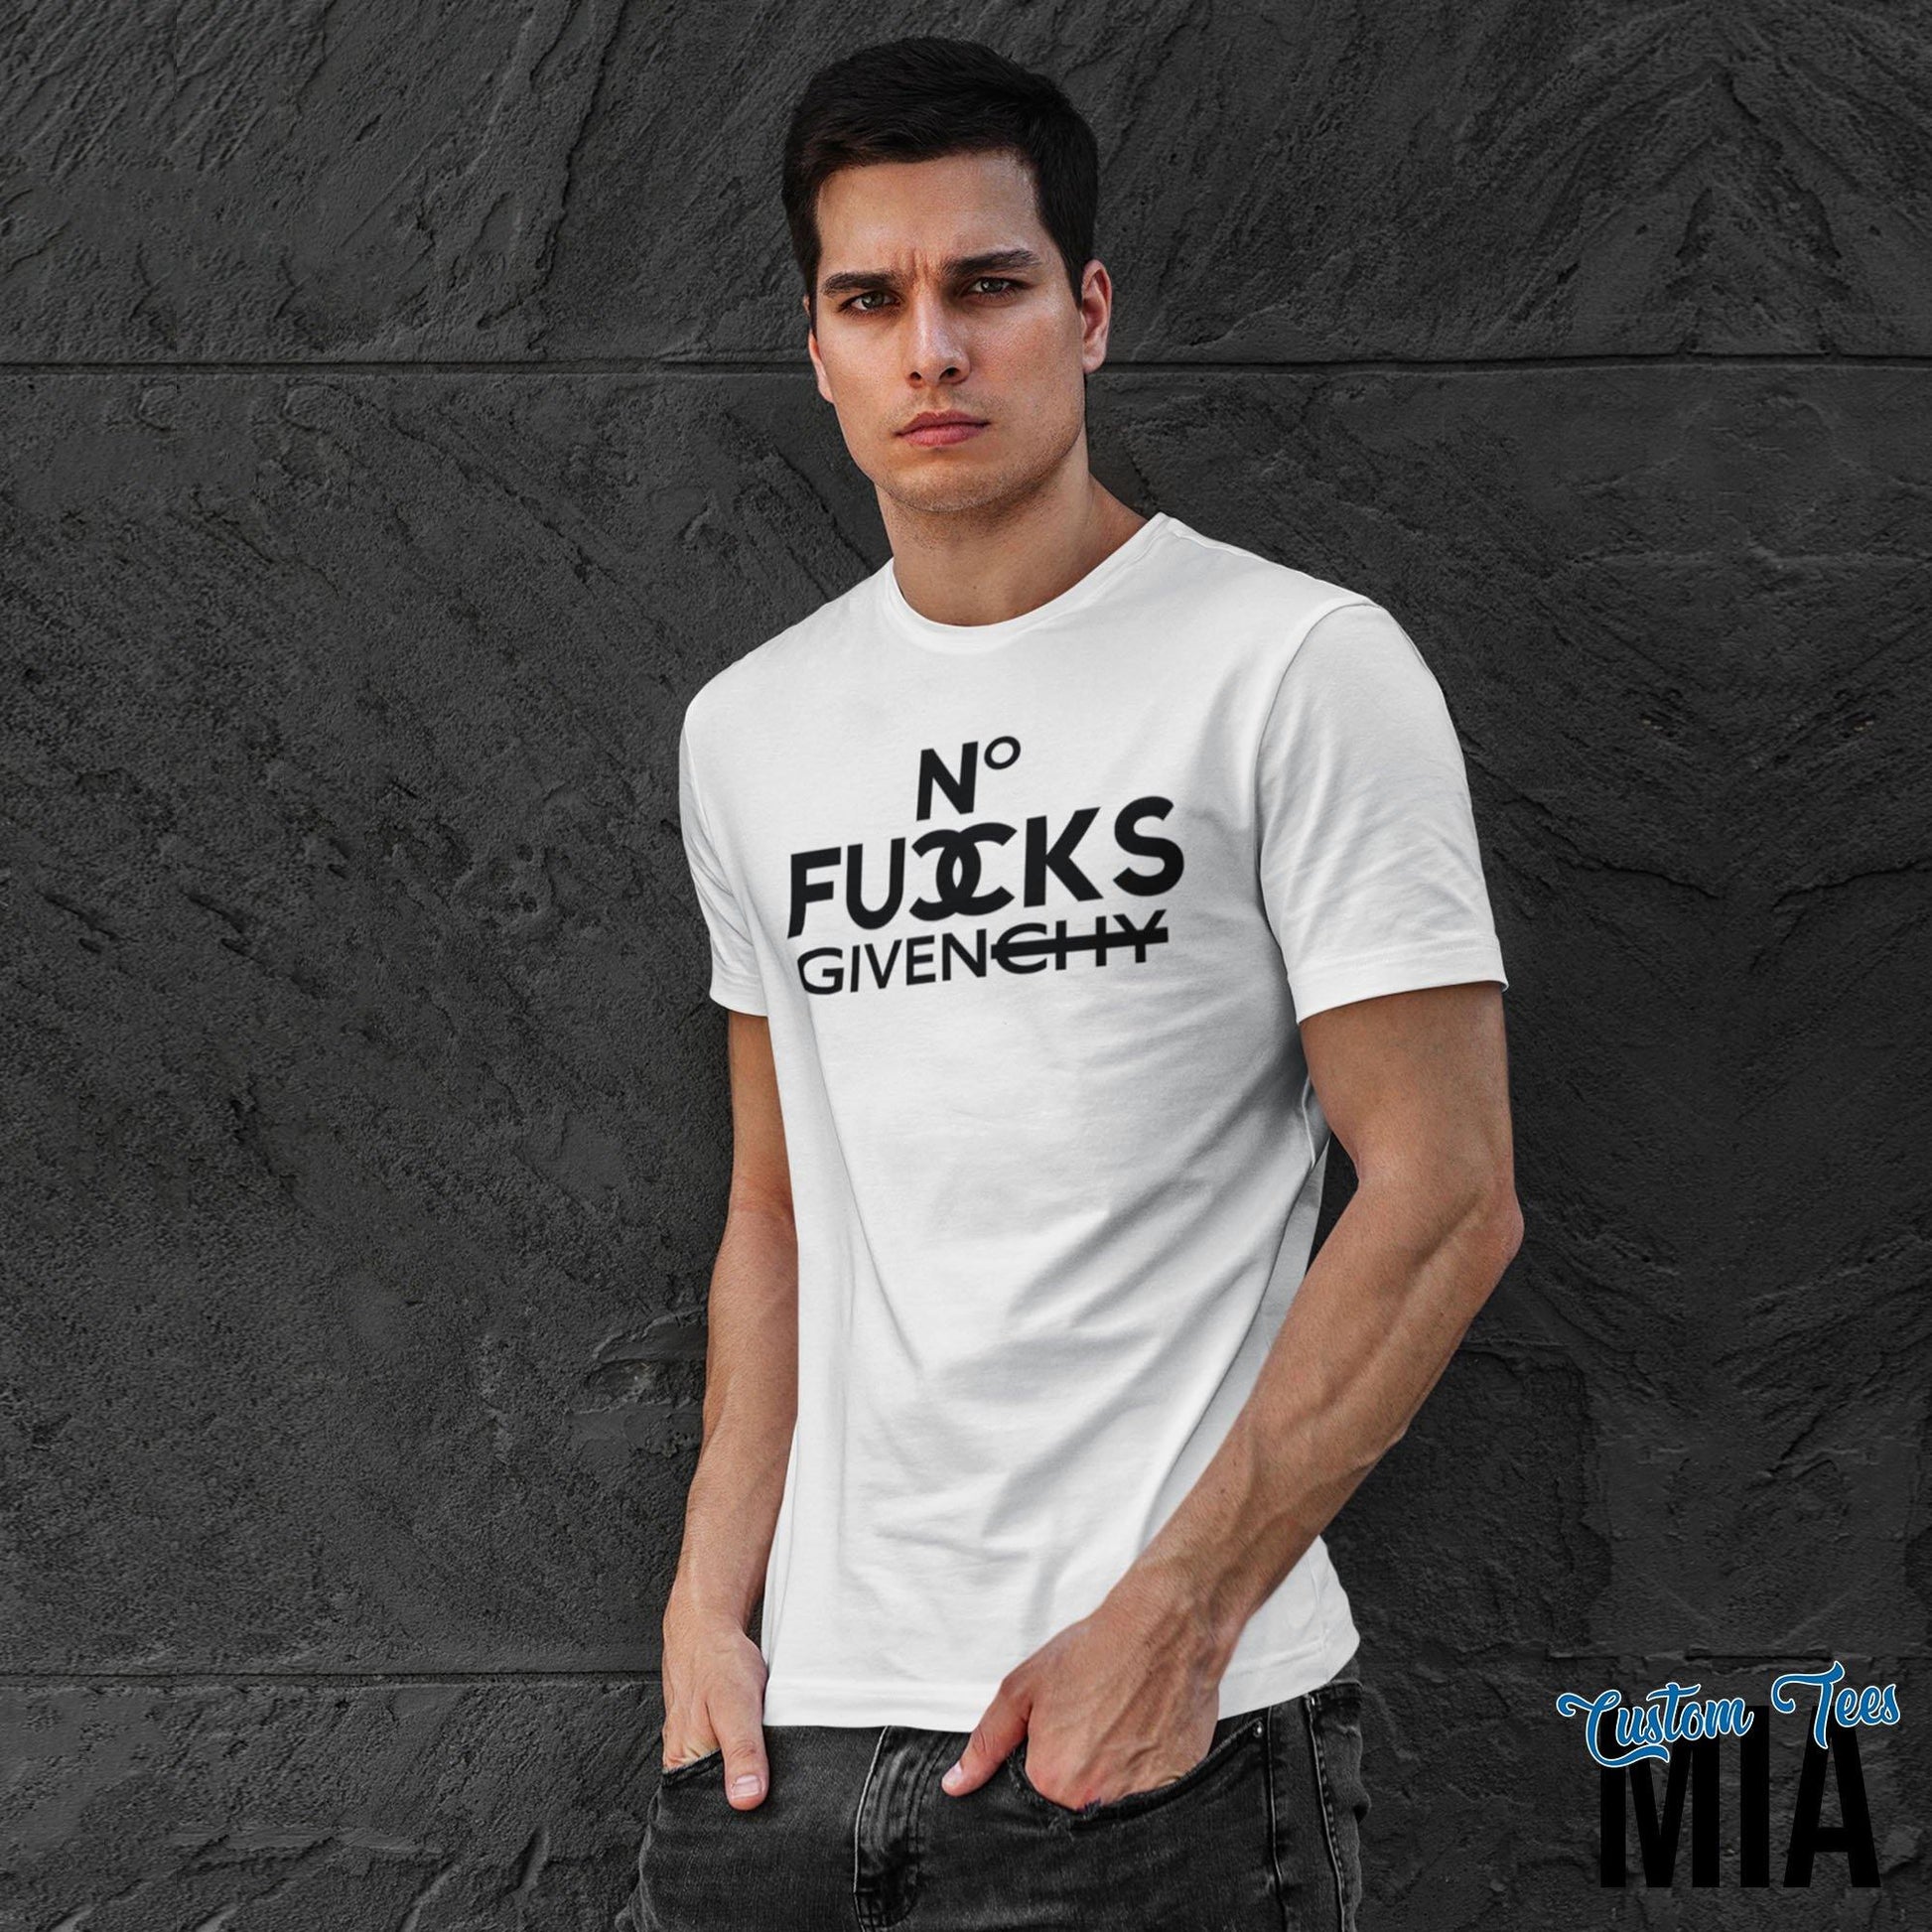 No Fucks Given Shirt - Custom Tees MIA